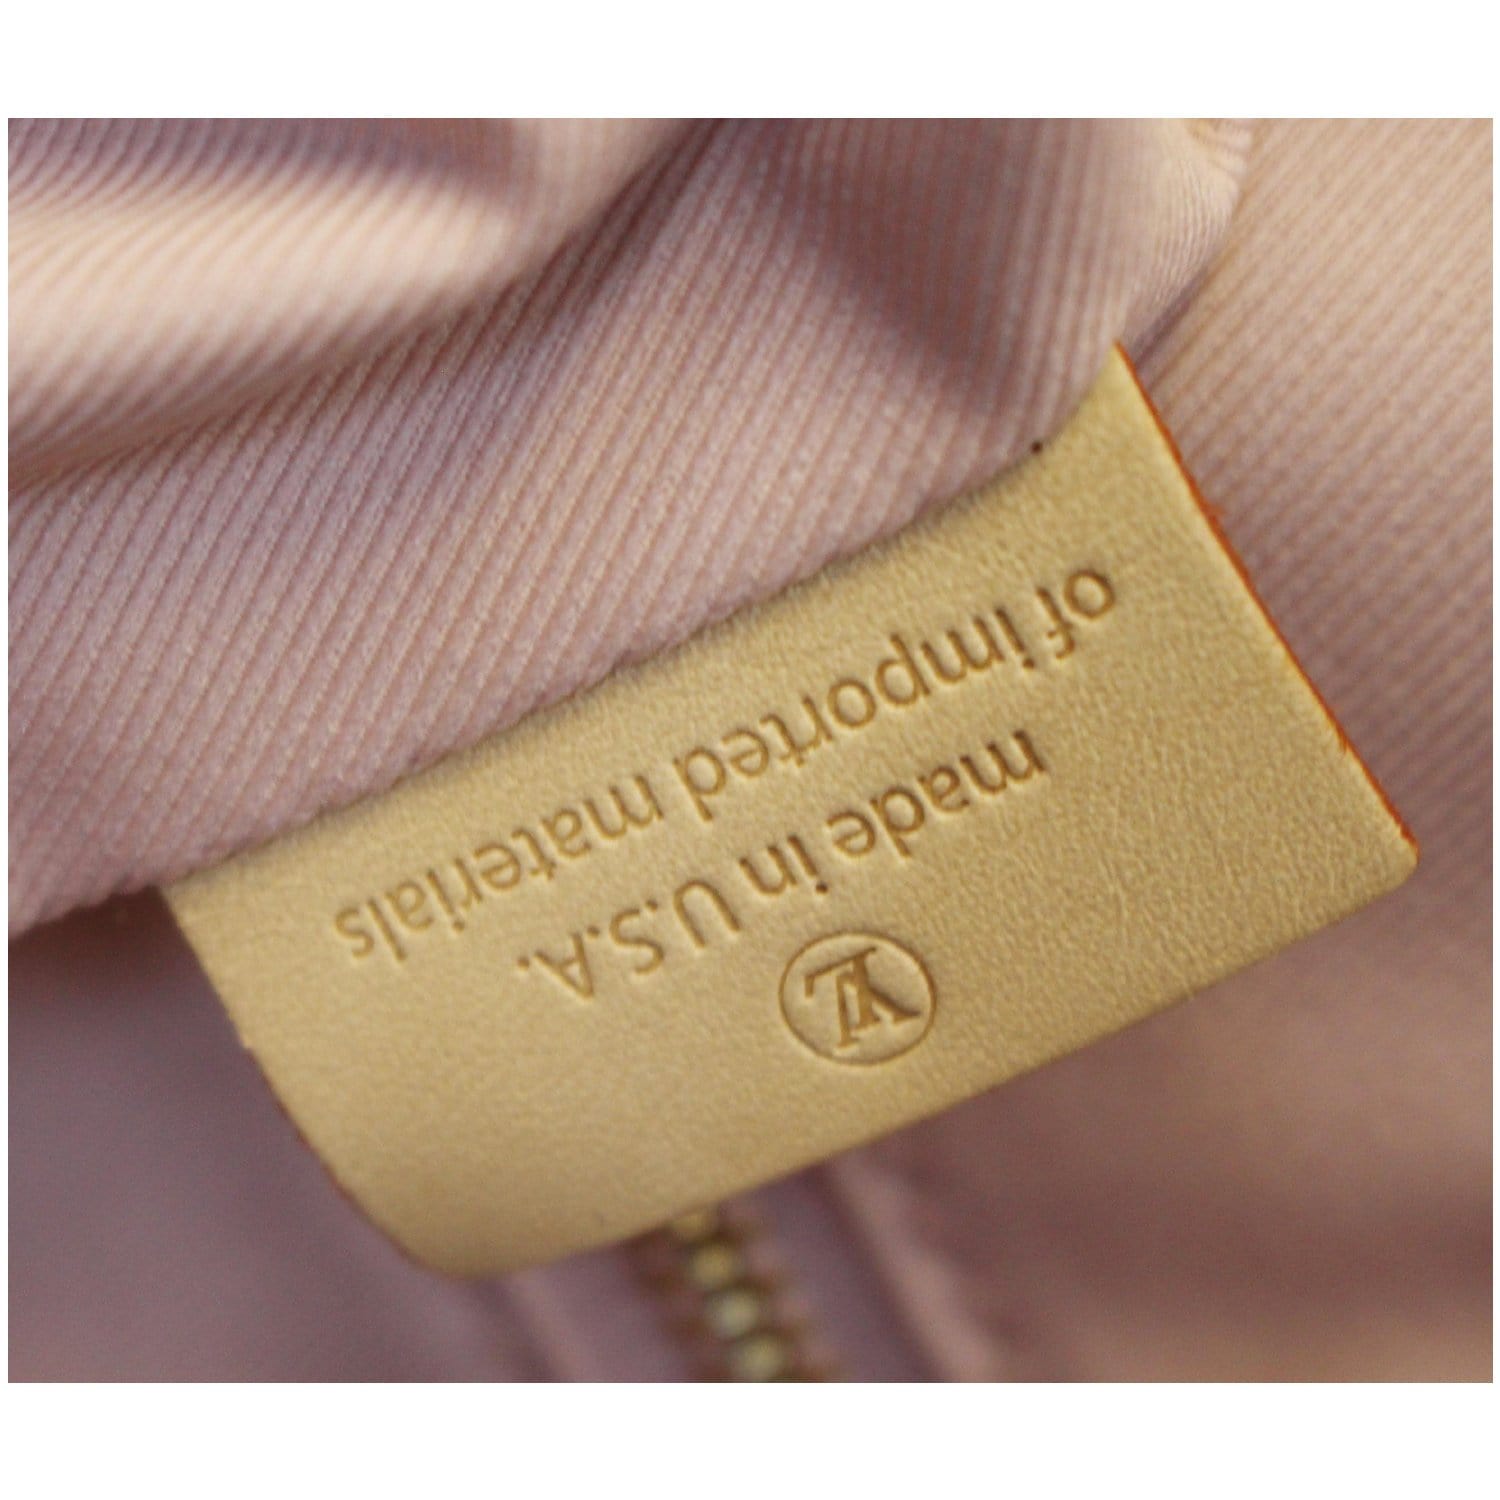 Louis Vuitton Graceful Gm Damier Azur – thankunext.us